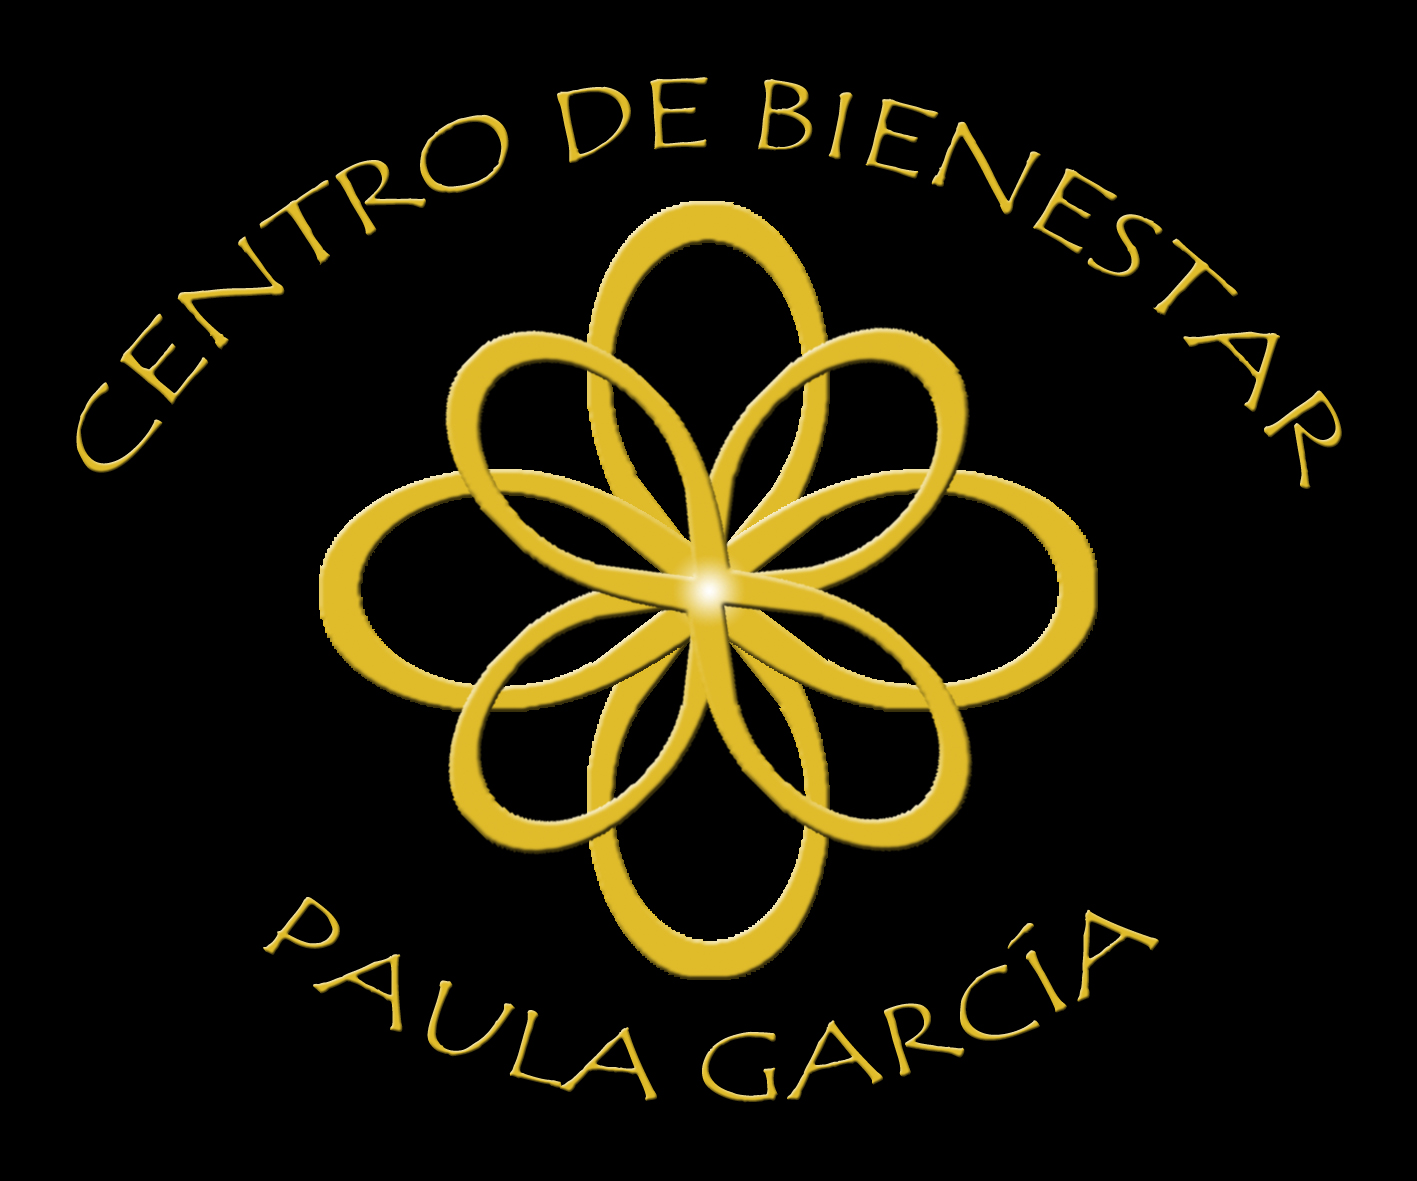 Centro de Bienestar Paula García